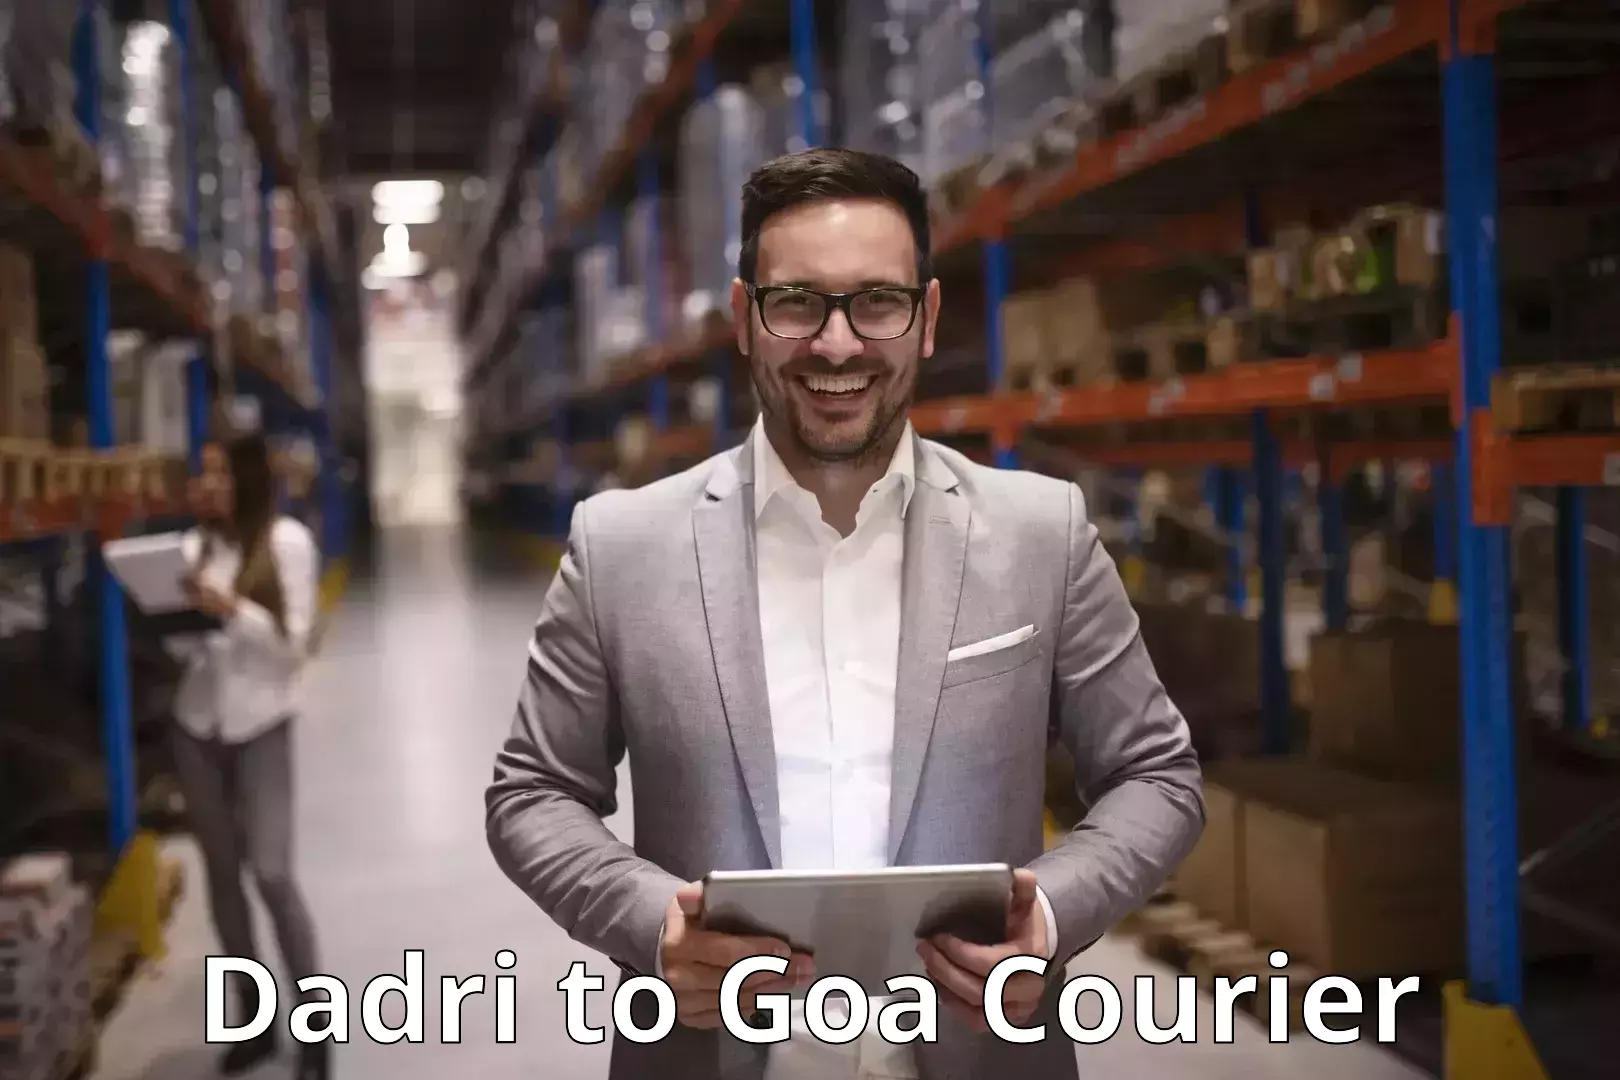 Digital courier platforms Dadri to Goa